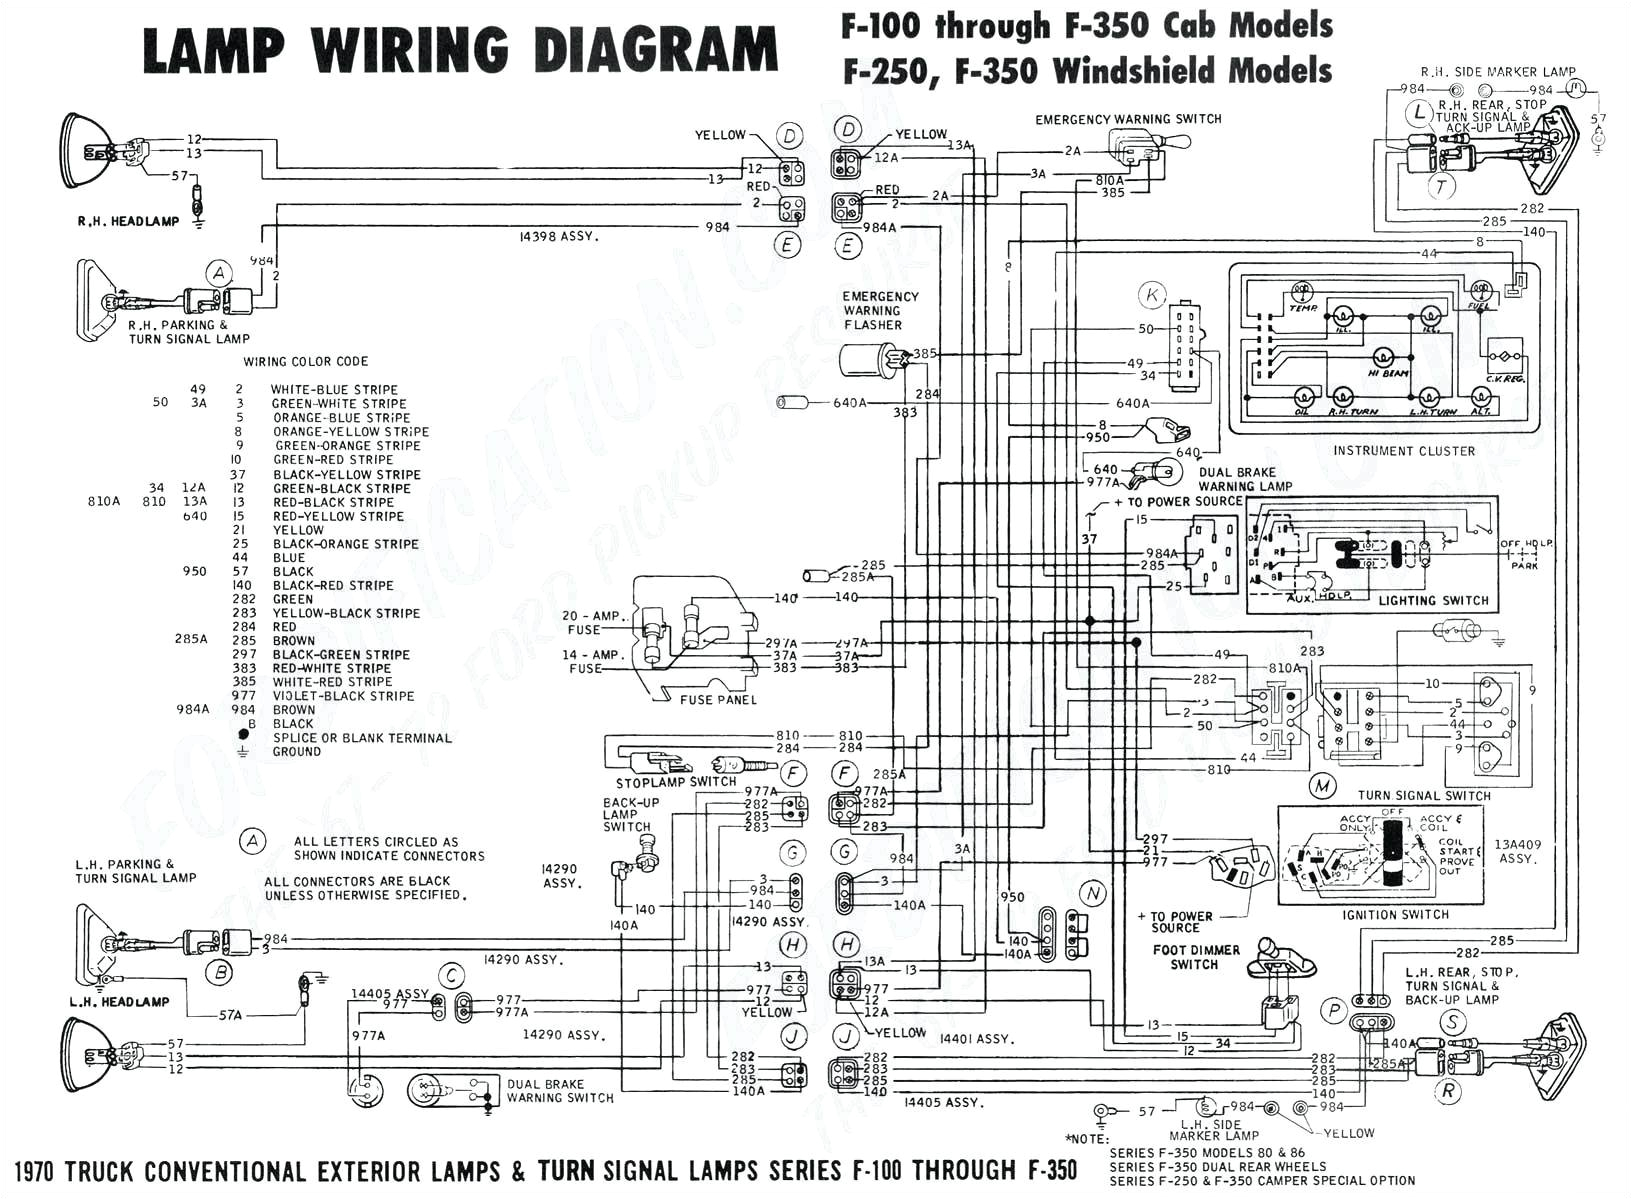 wiring diagrams 1967 buick skylark free download diagram wiring wiring diagrams 1967 buick skylark free download diagram